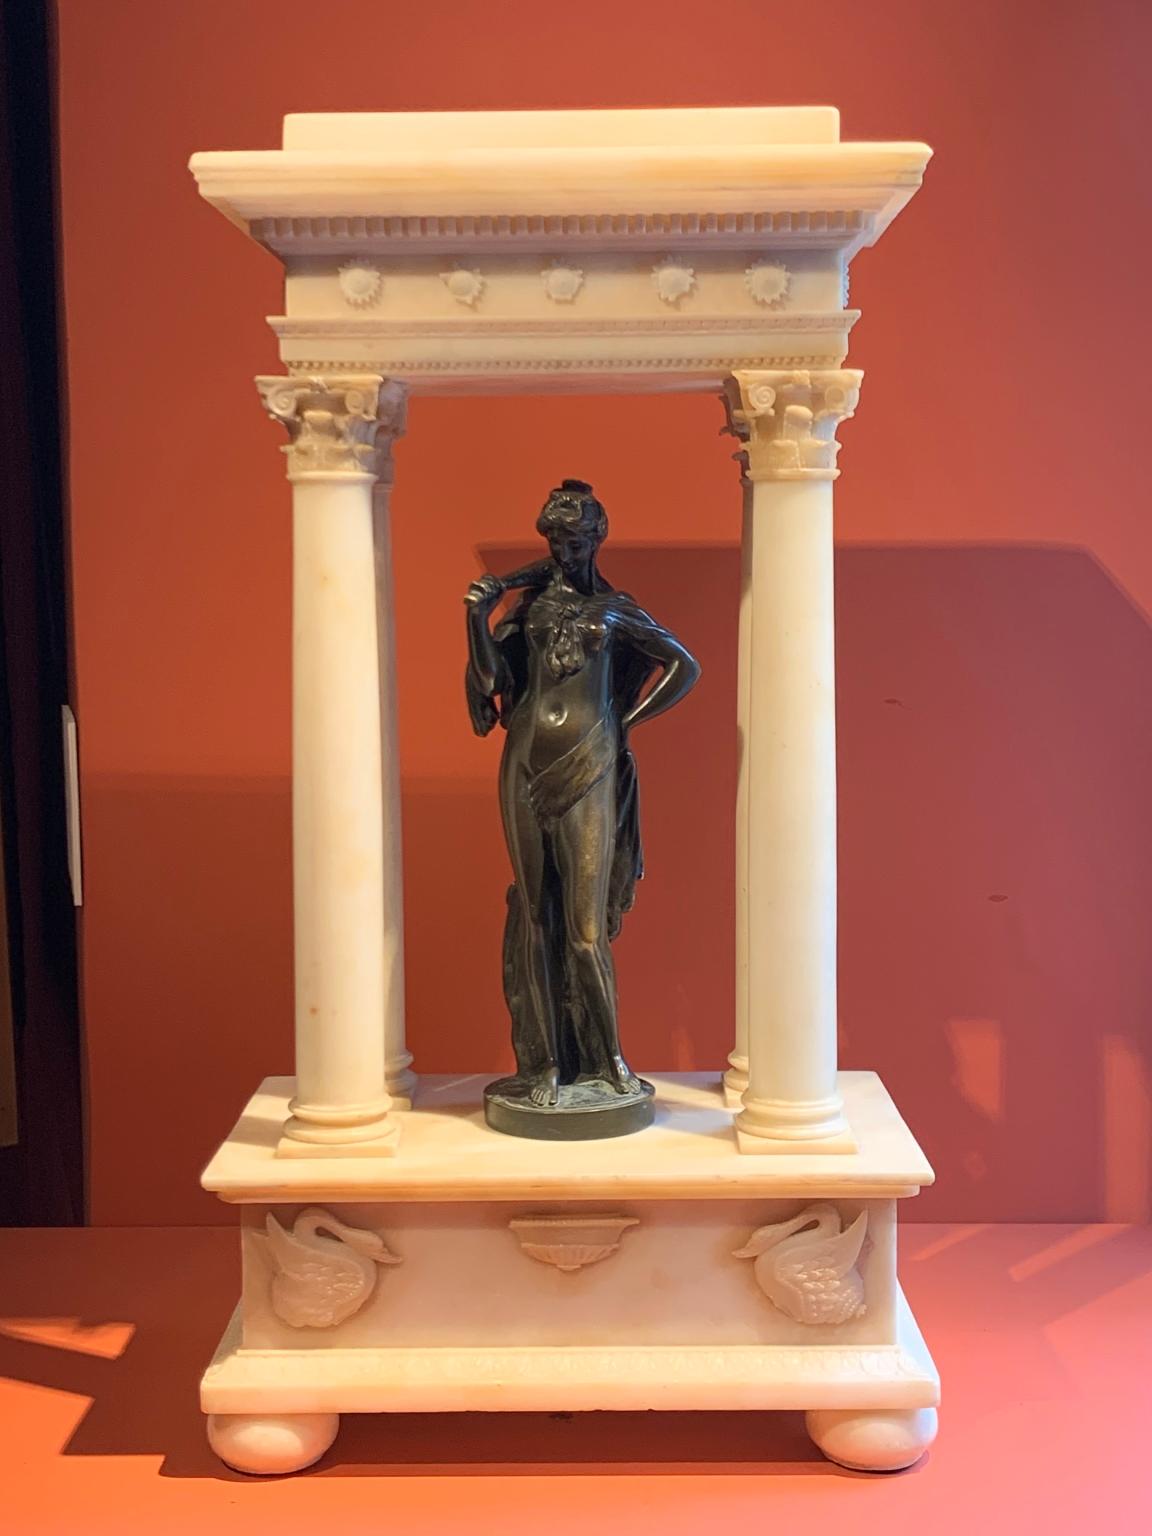 Objet d'art figuratif toscan néoclassique mythologique en bronze albâtre